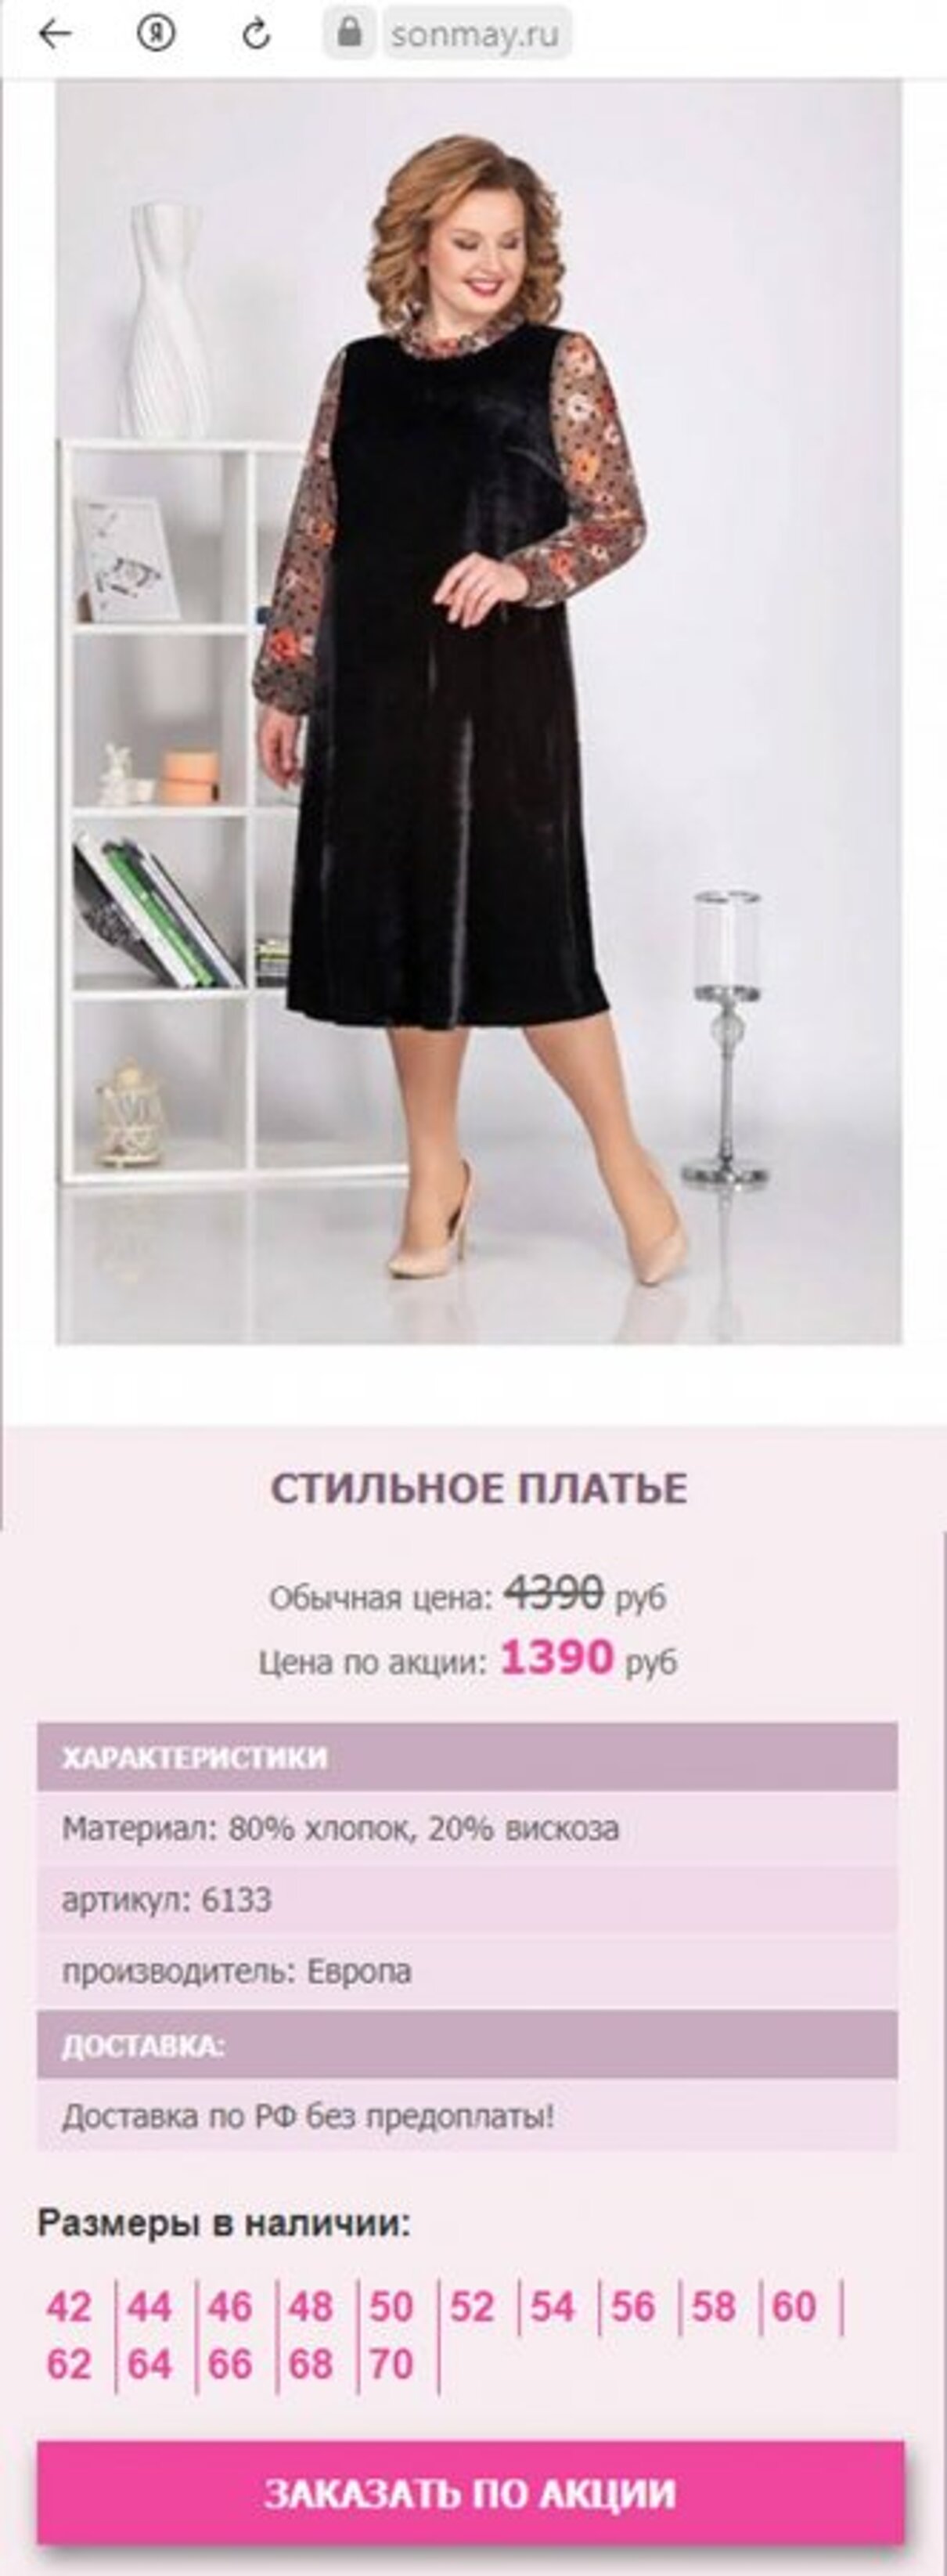 Магазин Стильной Одежды В России